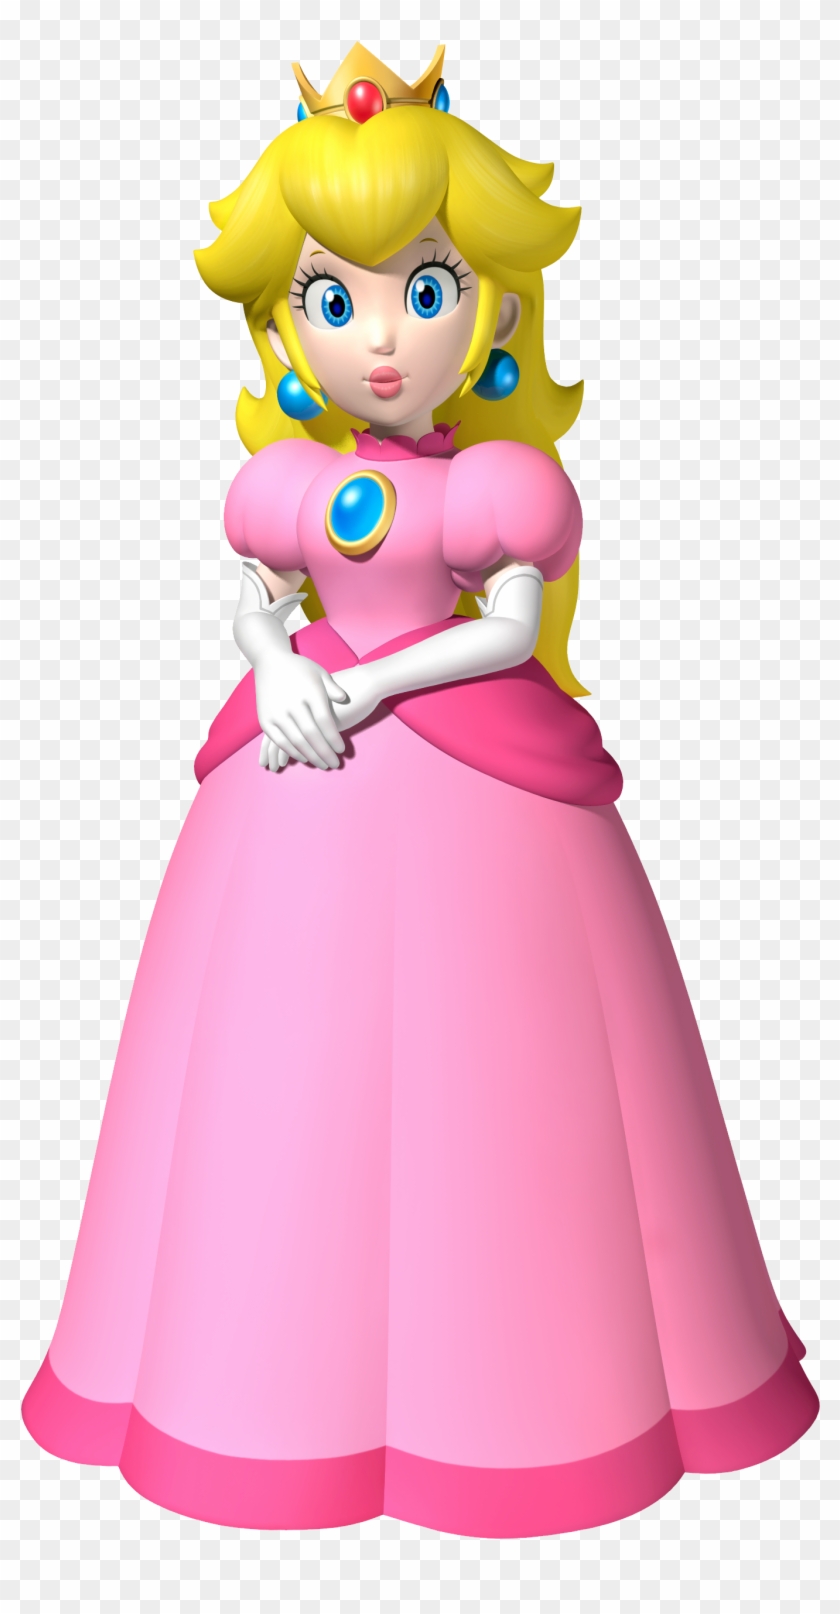 Princess Peach Clipart #455127